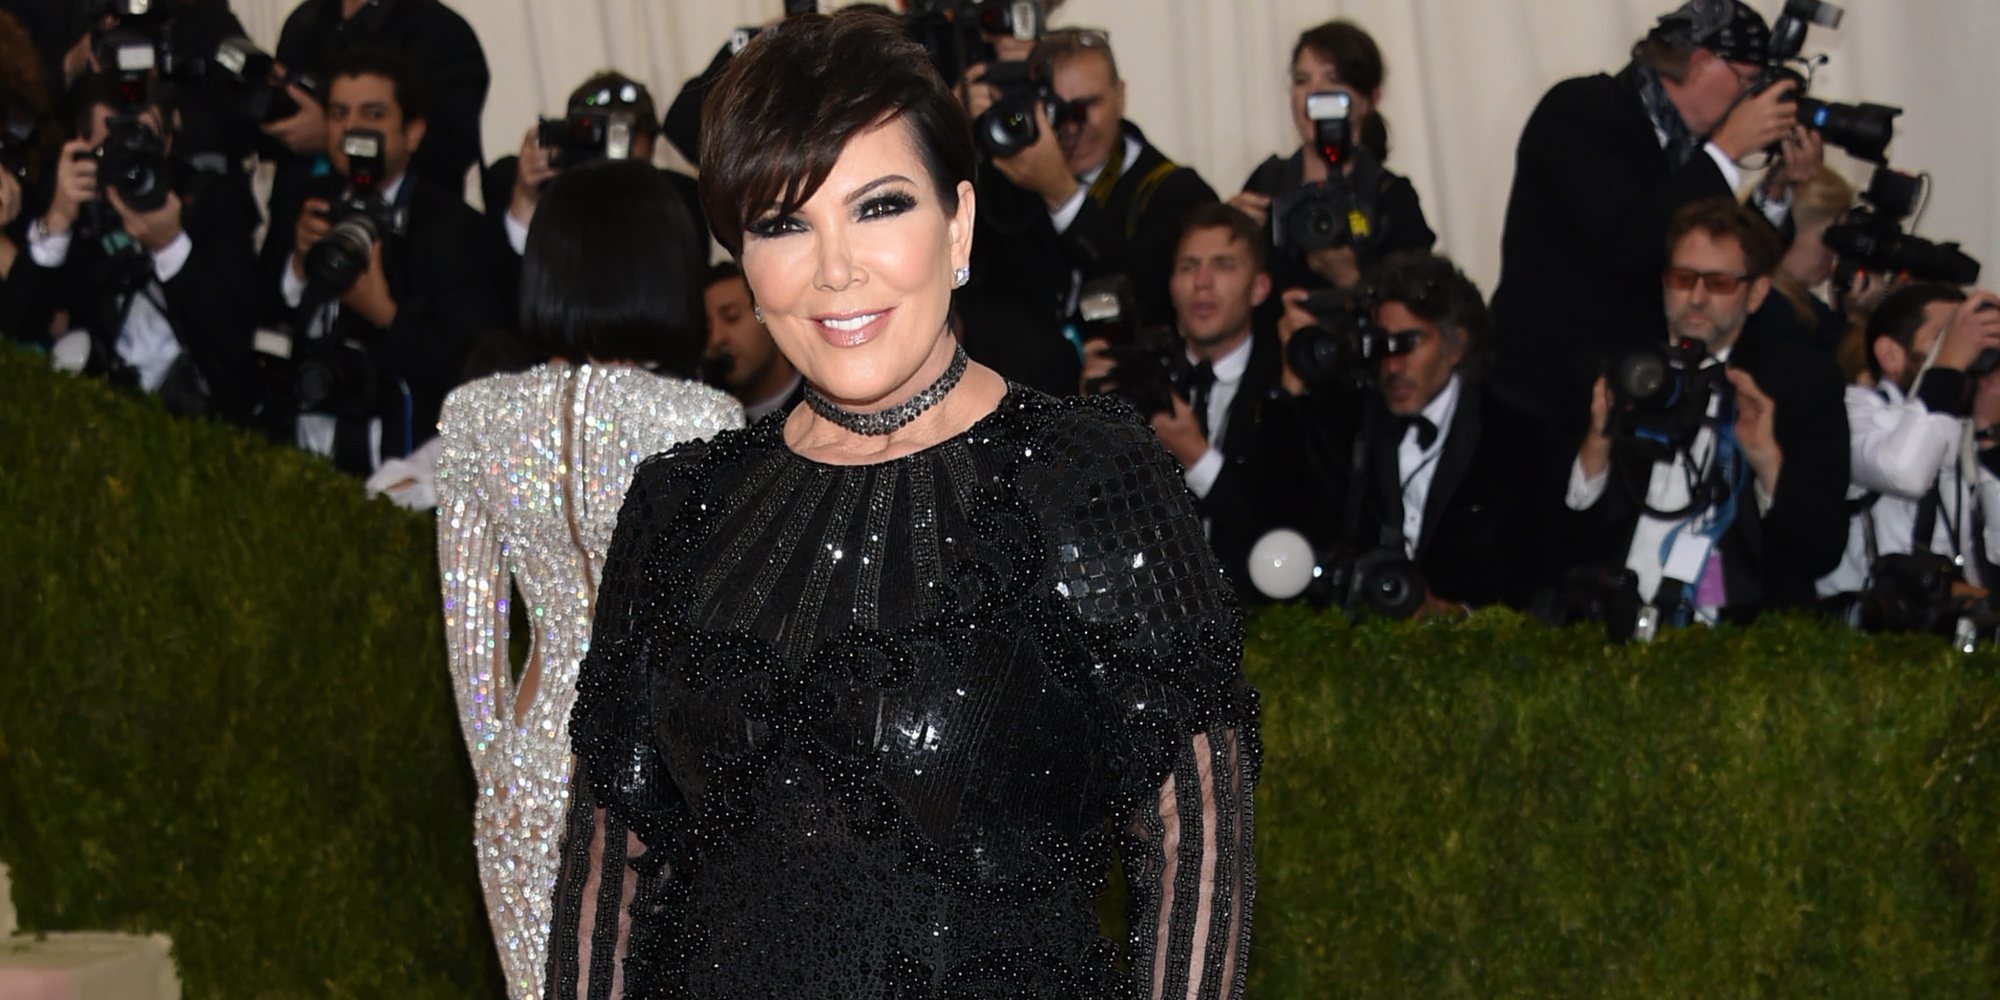 Kris Jenner defiende a Kanye West: "Siempre tiene buenas intenciones"